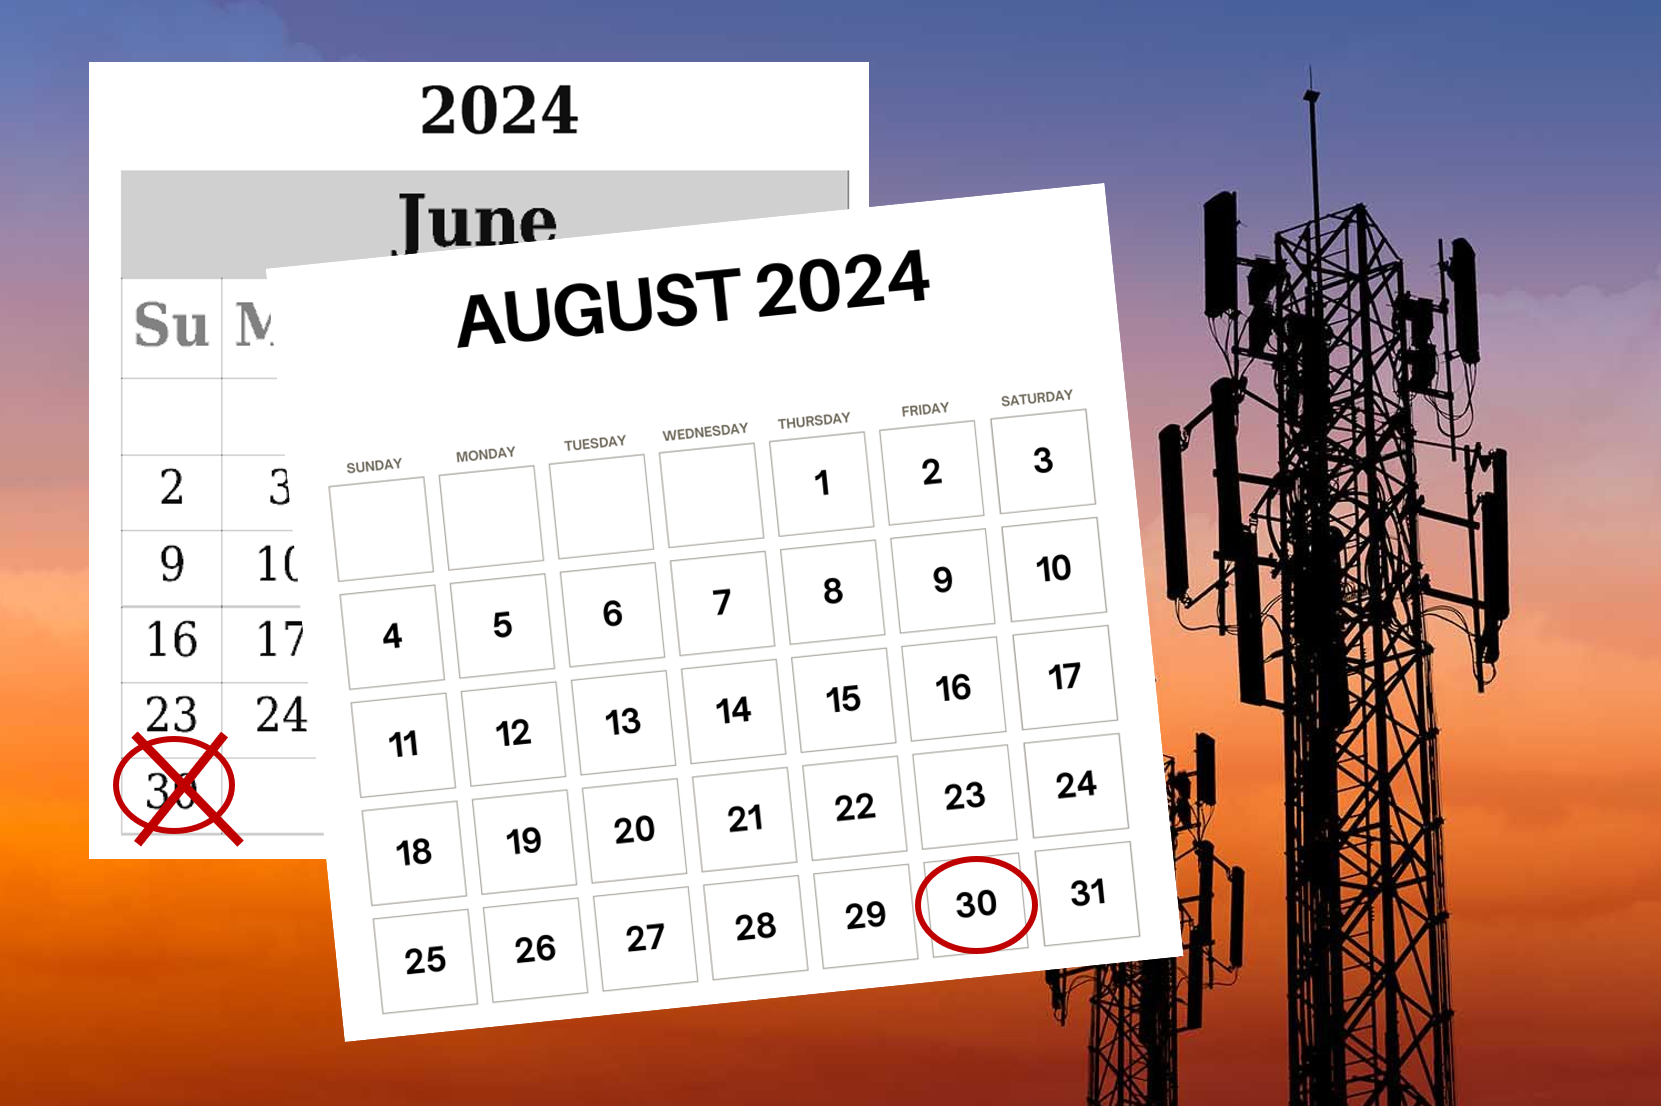 3g august 2024 deadline